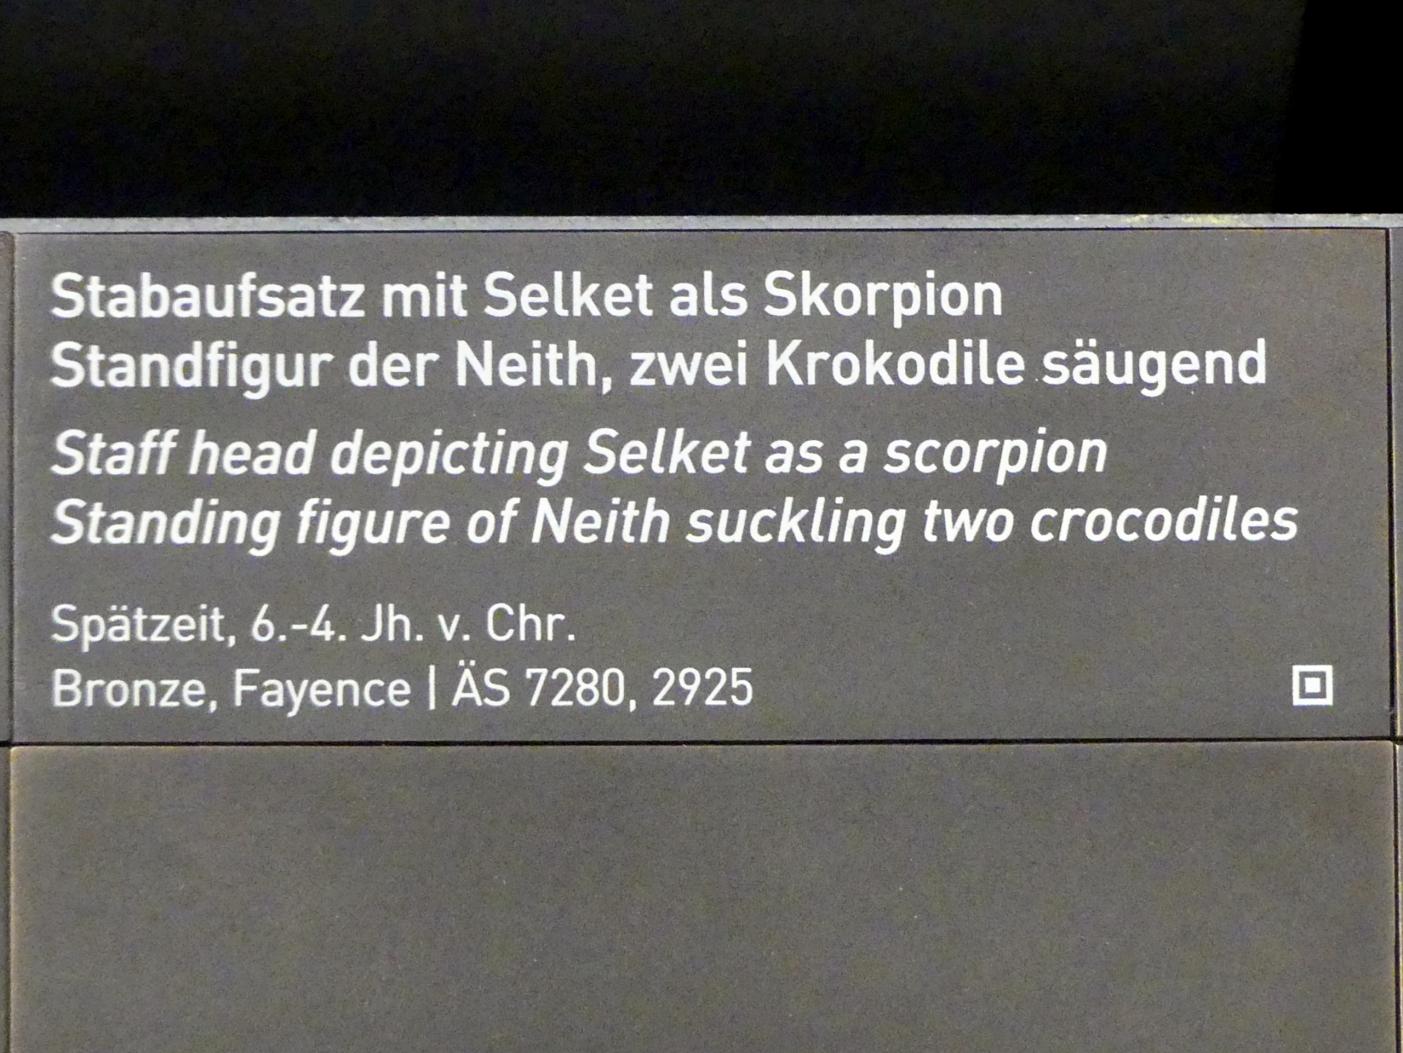 Stabaufsatz mit Selket als Skorpion, Spätzeit, 360 - 342 v. Chr., 600 - 300 v. Chr., Bild 4/4